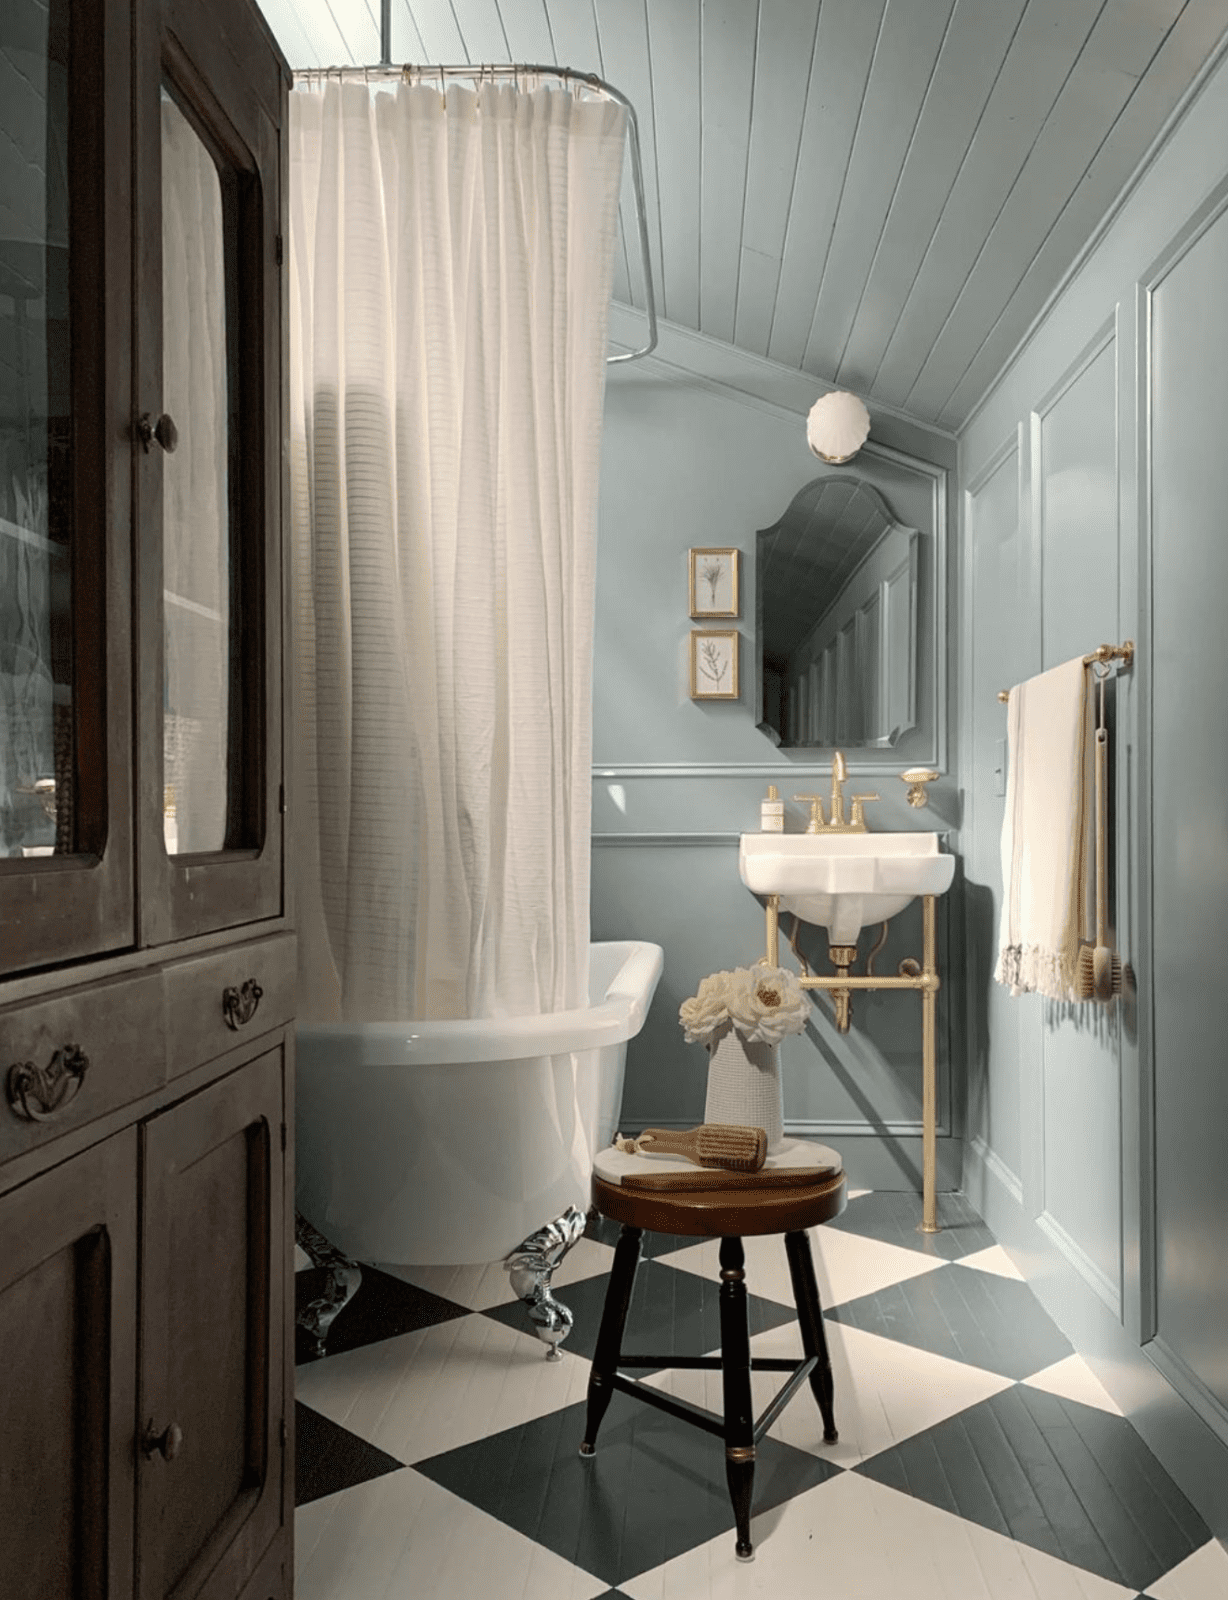 Bathroom Design: 7 Remodeled Bathrooms I Love | Wit & Delight